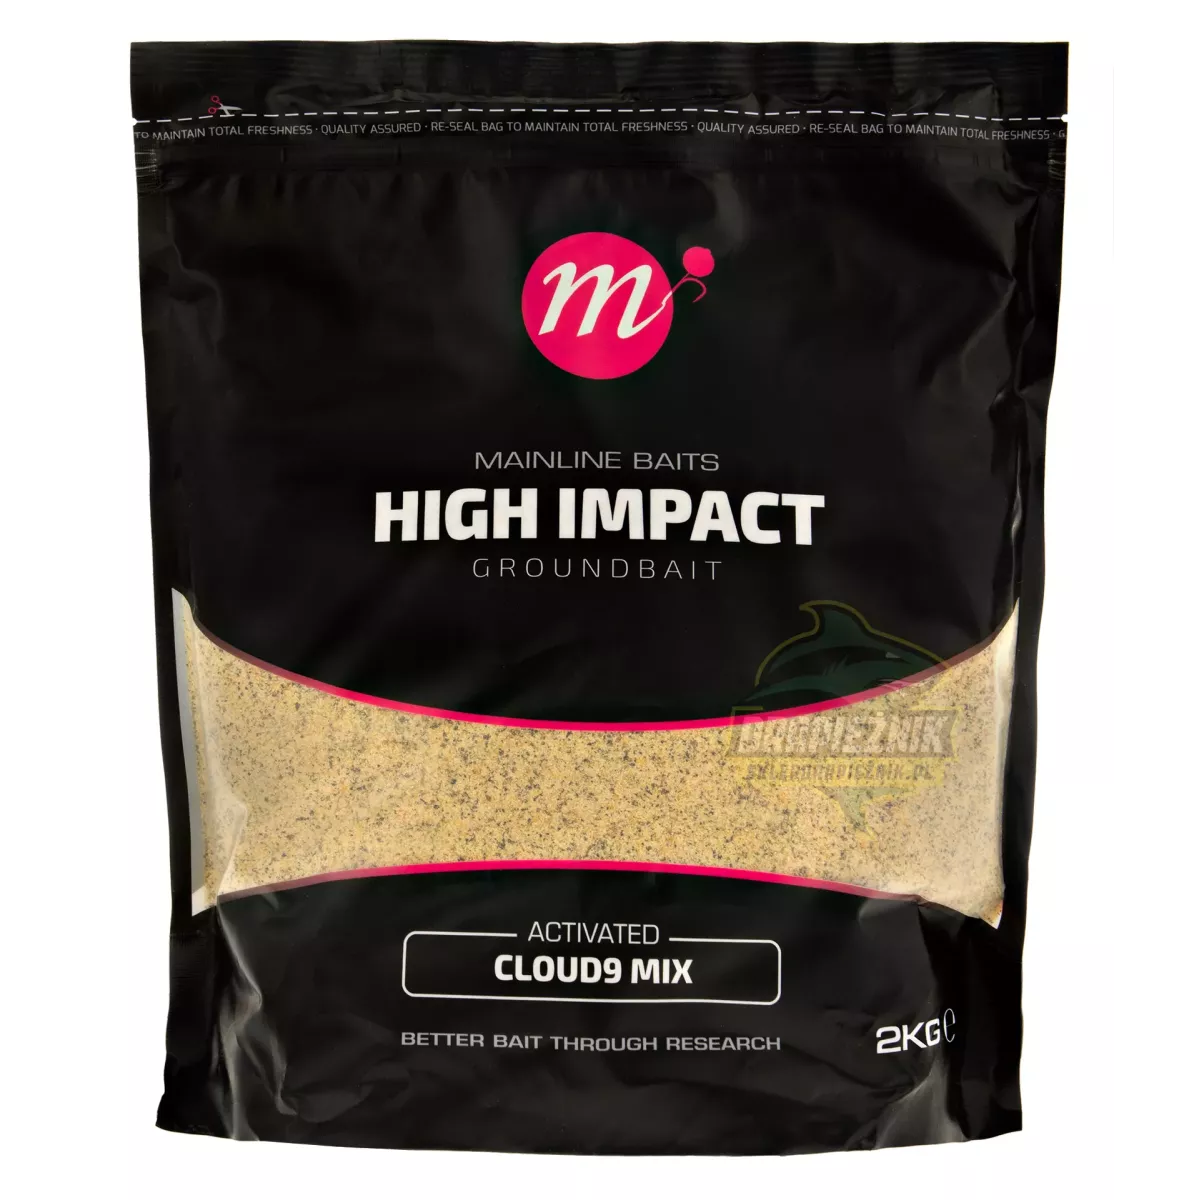 Zanęta High Impact Groundbait 2kg - Active Could9 Mix